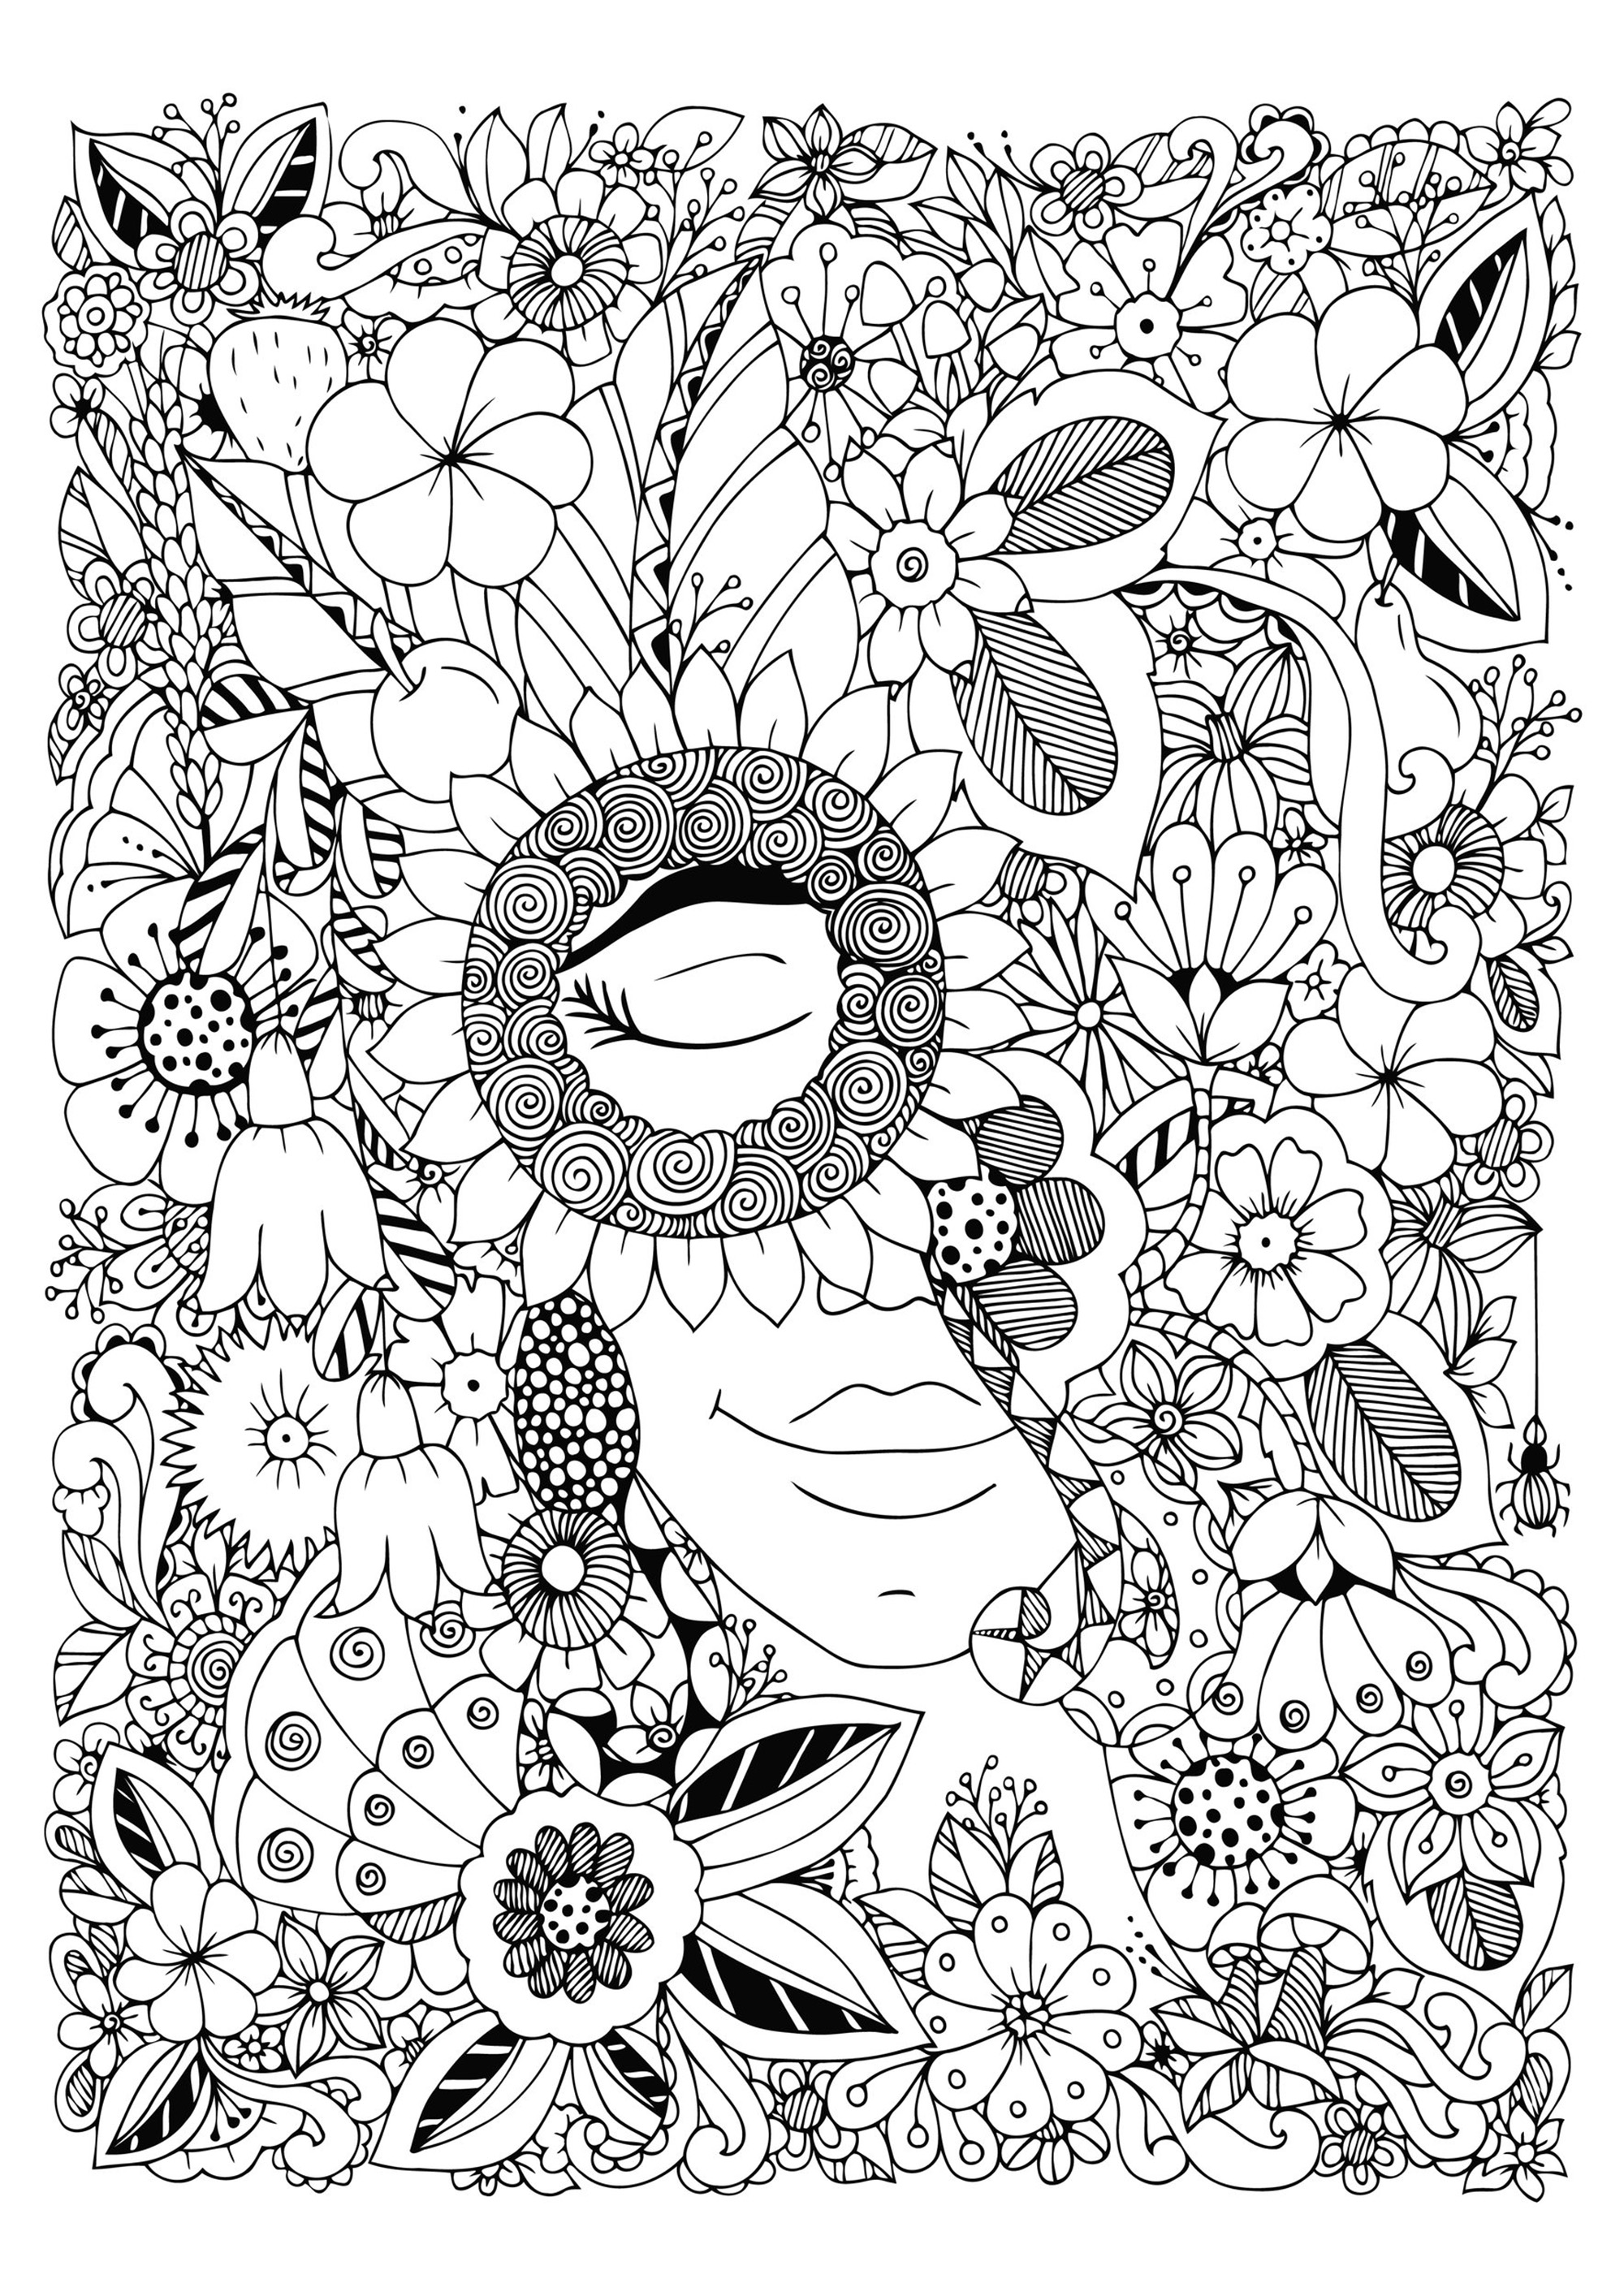 Mujer con los ojos cerrados, escondida en medio de bonitas flores muy variadas, Artista : Tanvetka   Origen : 123rf